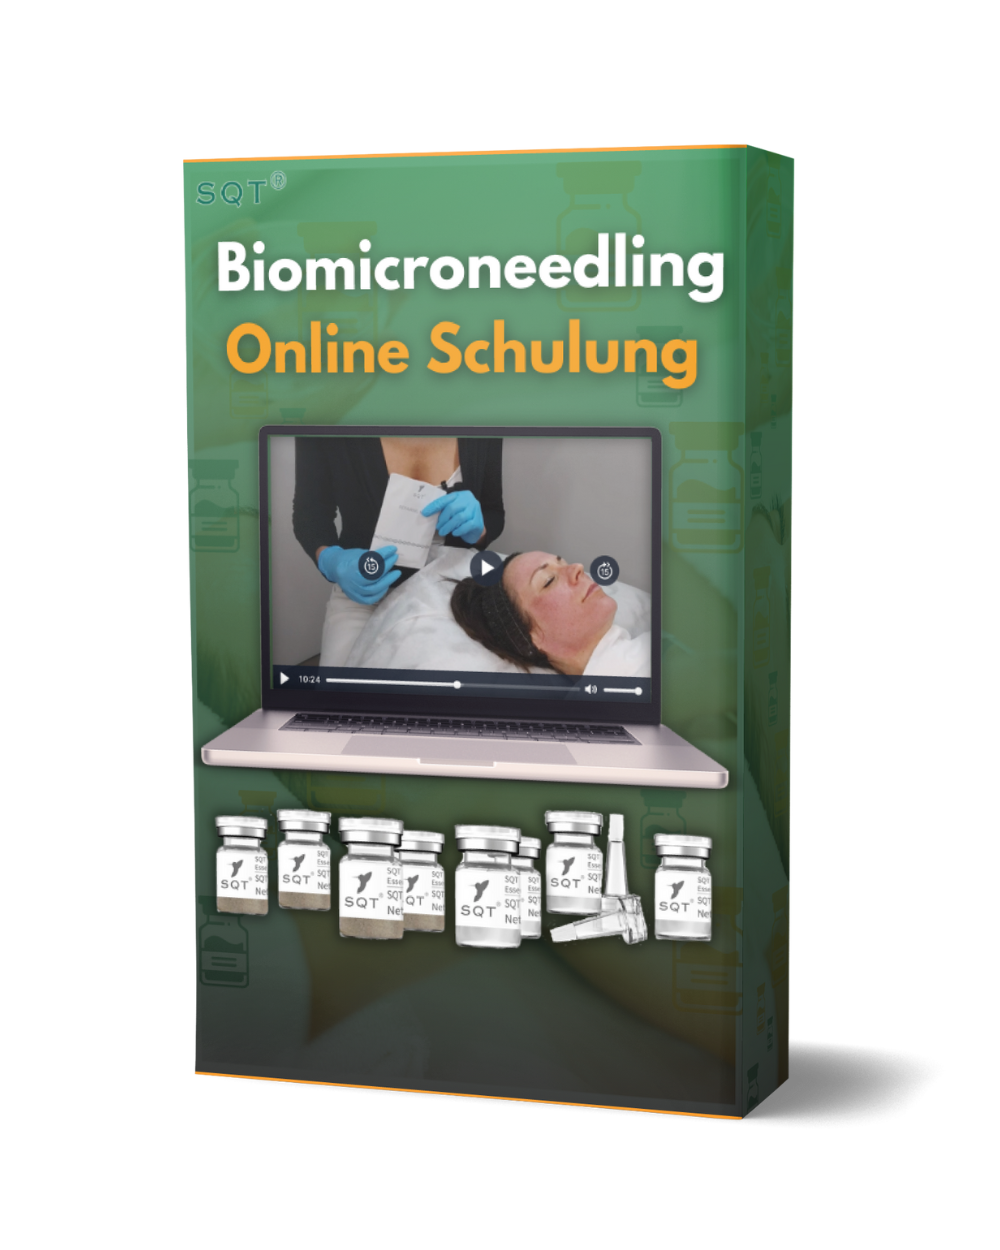 Set de inicio SQT Biomicroneedling para trastornos pigmentarios que incluye capacitación en línea